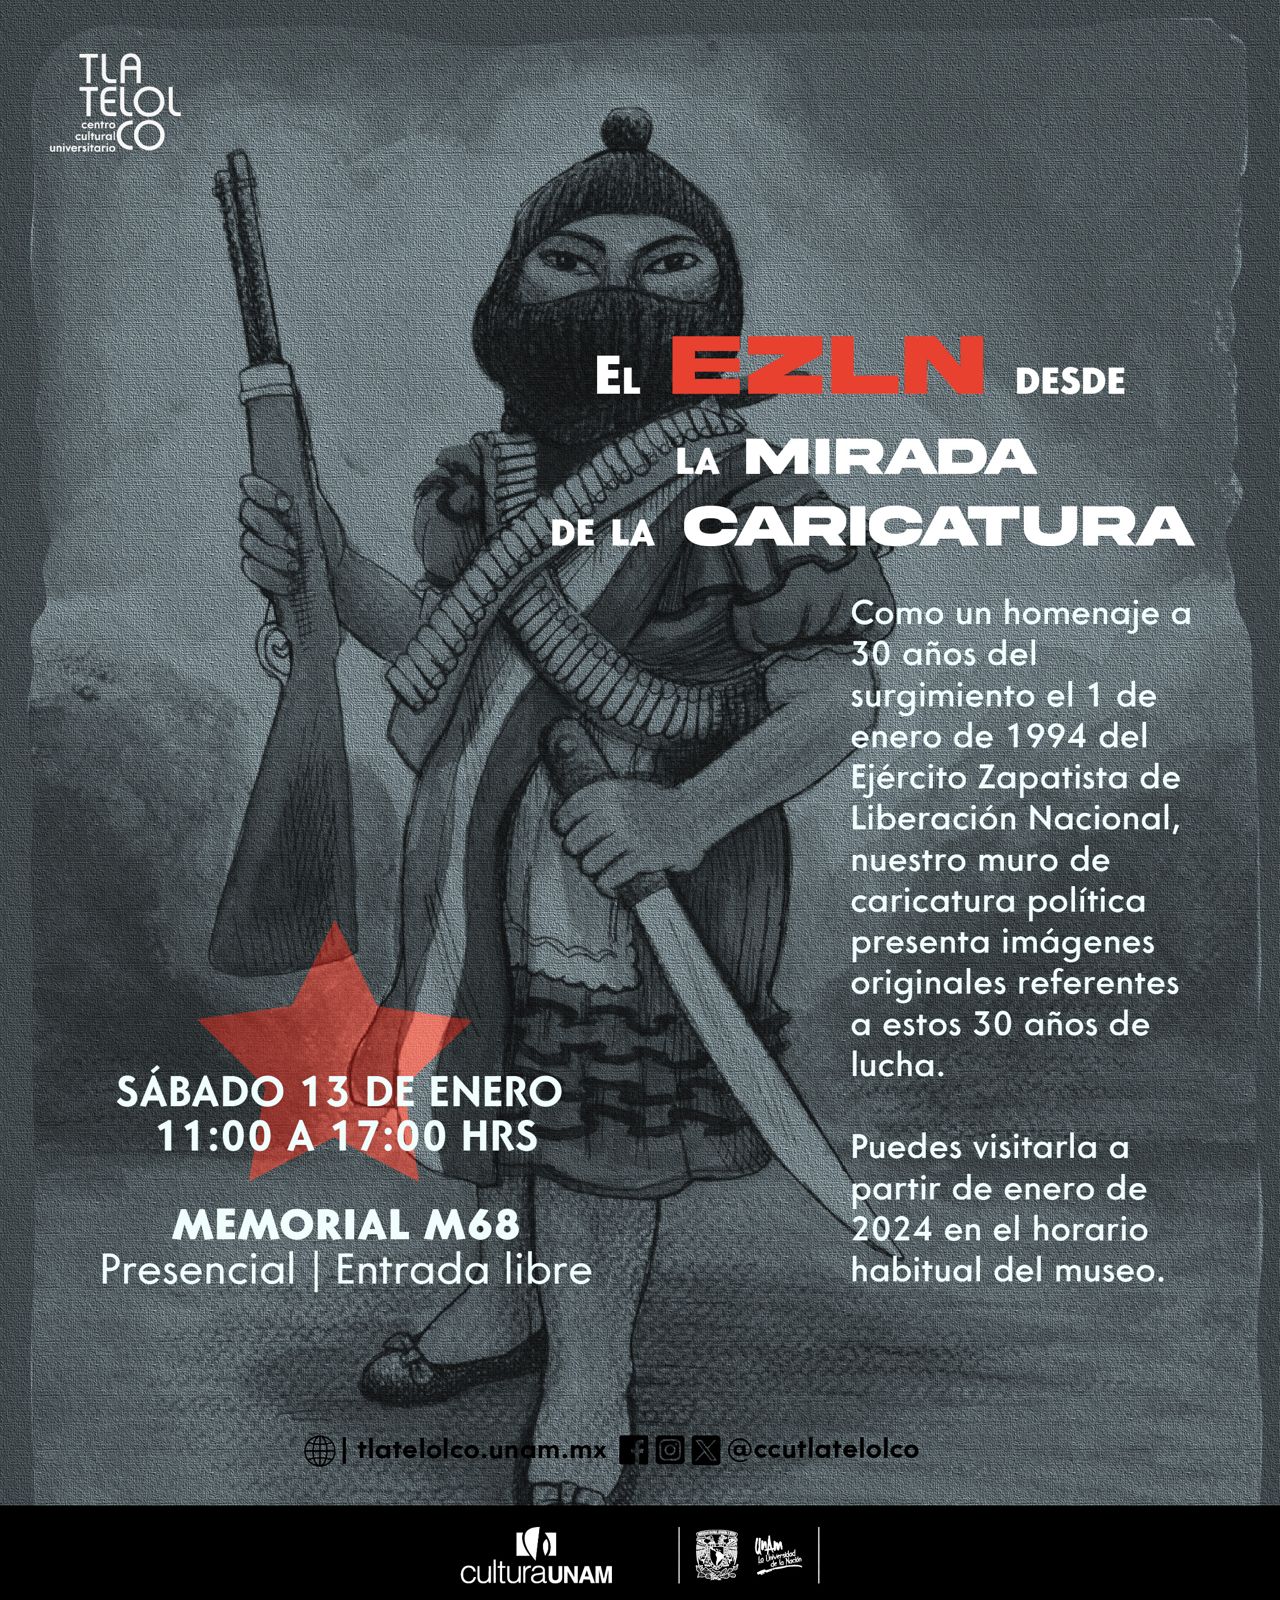 El EZLN desde la mirada de la caricatura